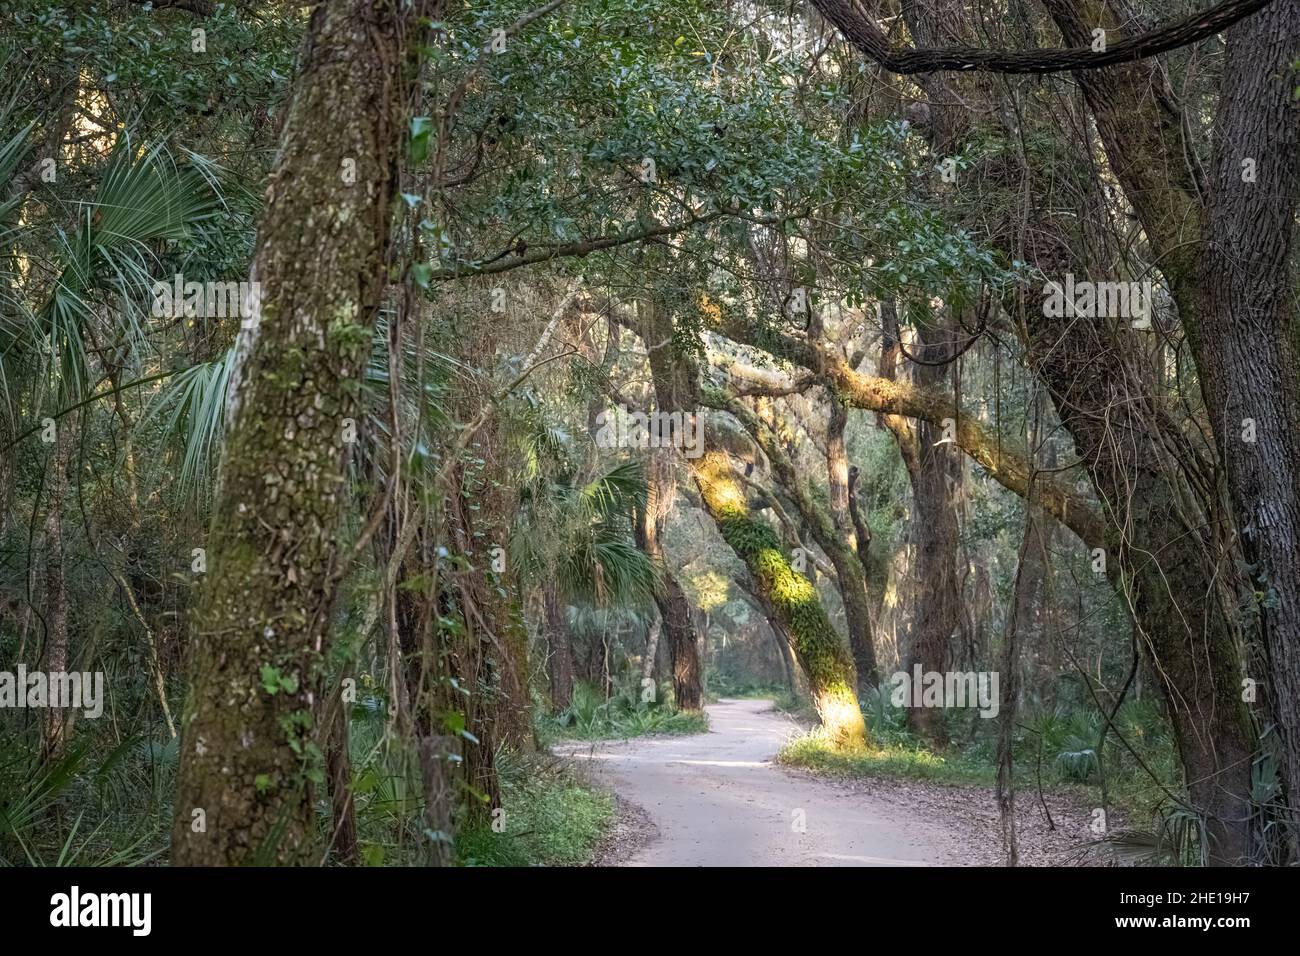 La lumière du lever du soleil se filtre à travers le couvert d'arbres sur la route tortueuse de l'île de fort George jusqu'à la plantation Kingsley à Jacksonville, en Floride.(ÉTATS-UNIS) Banque D'Images